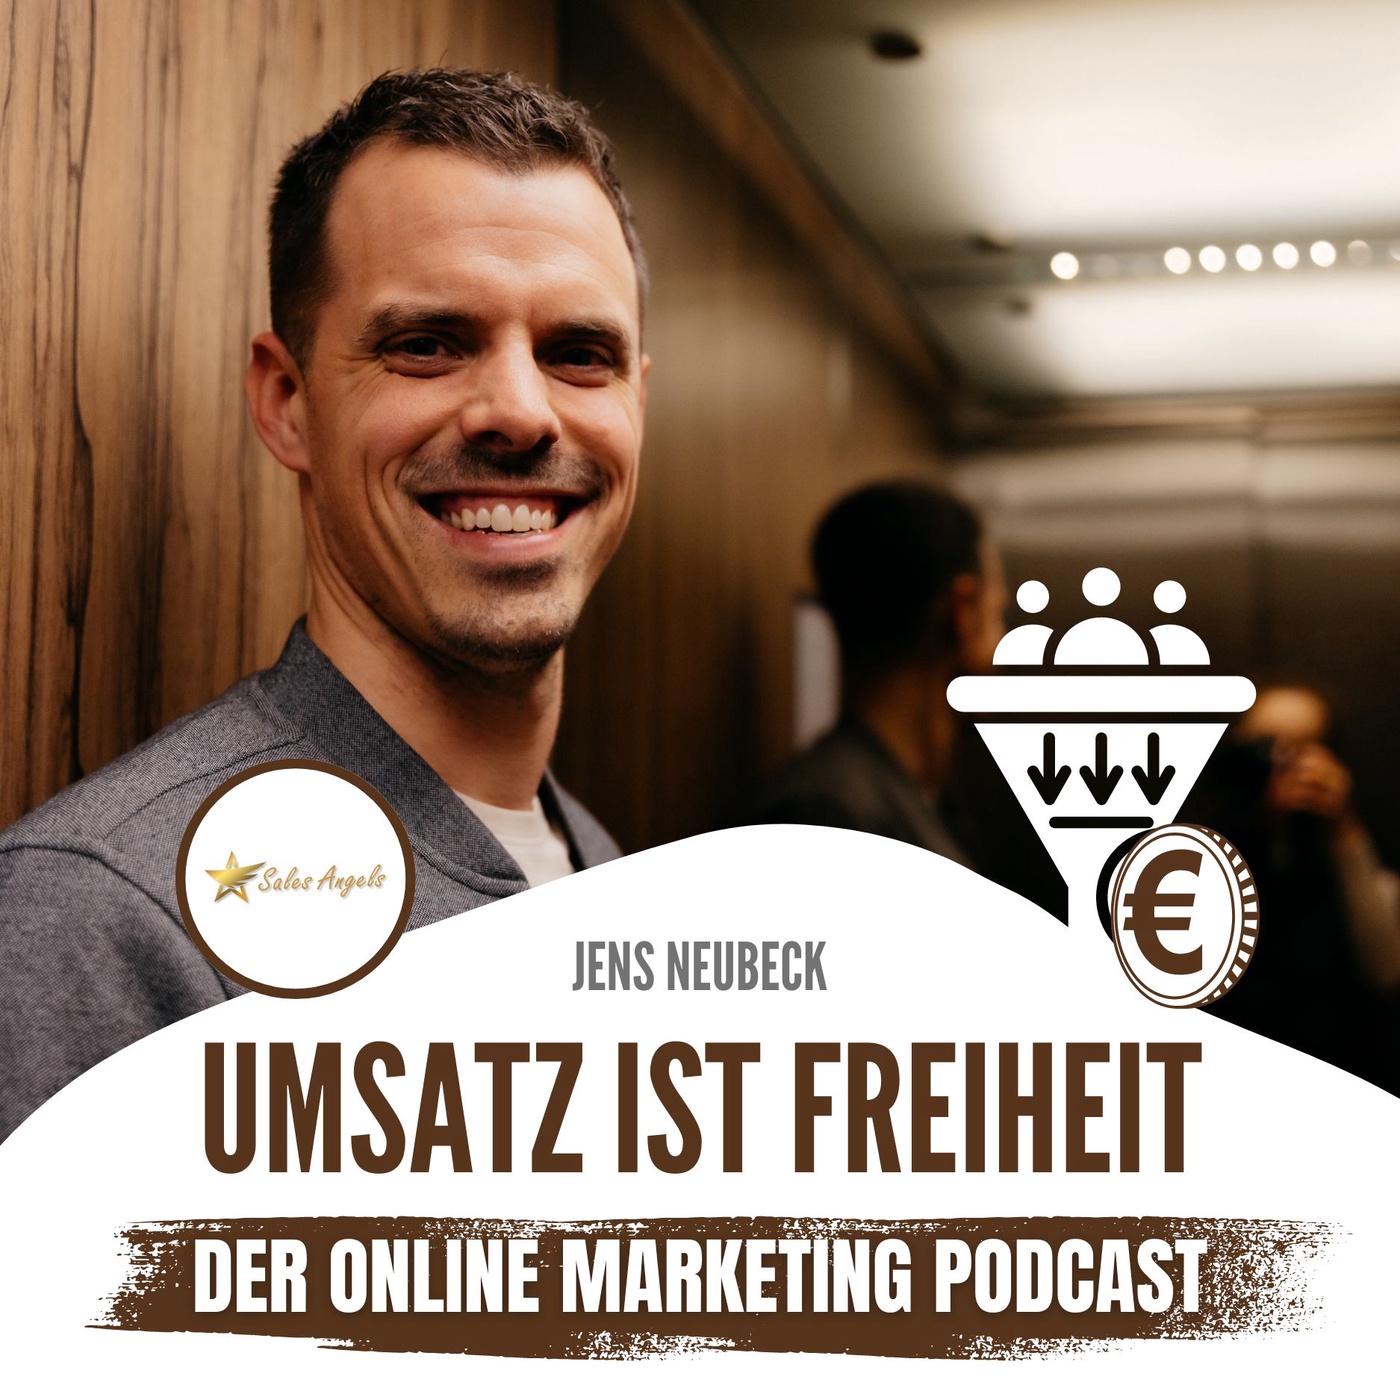 Umsatz ist Freiheit - Der Online Marketing Podcast mit Jens Neubeck